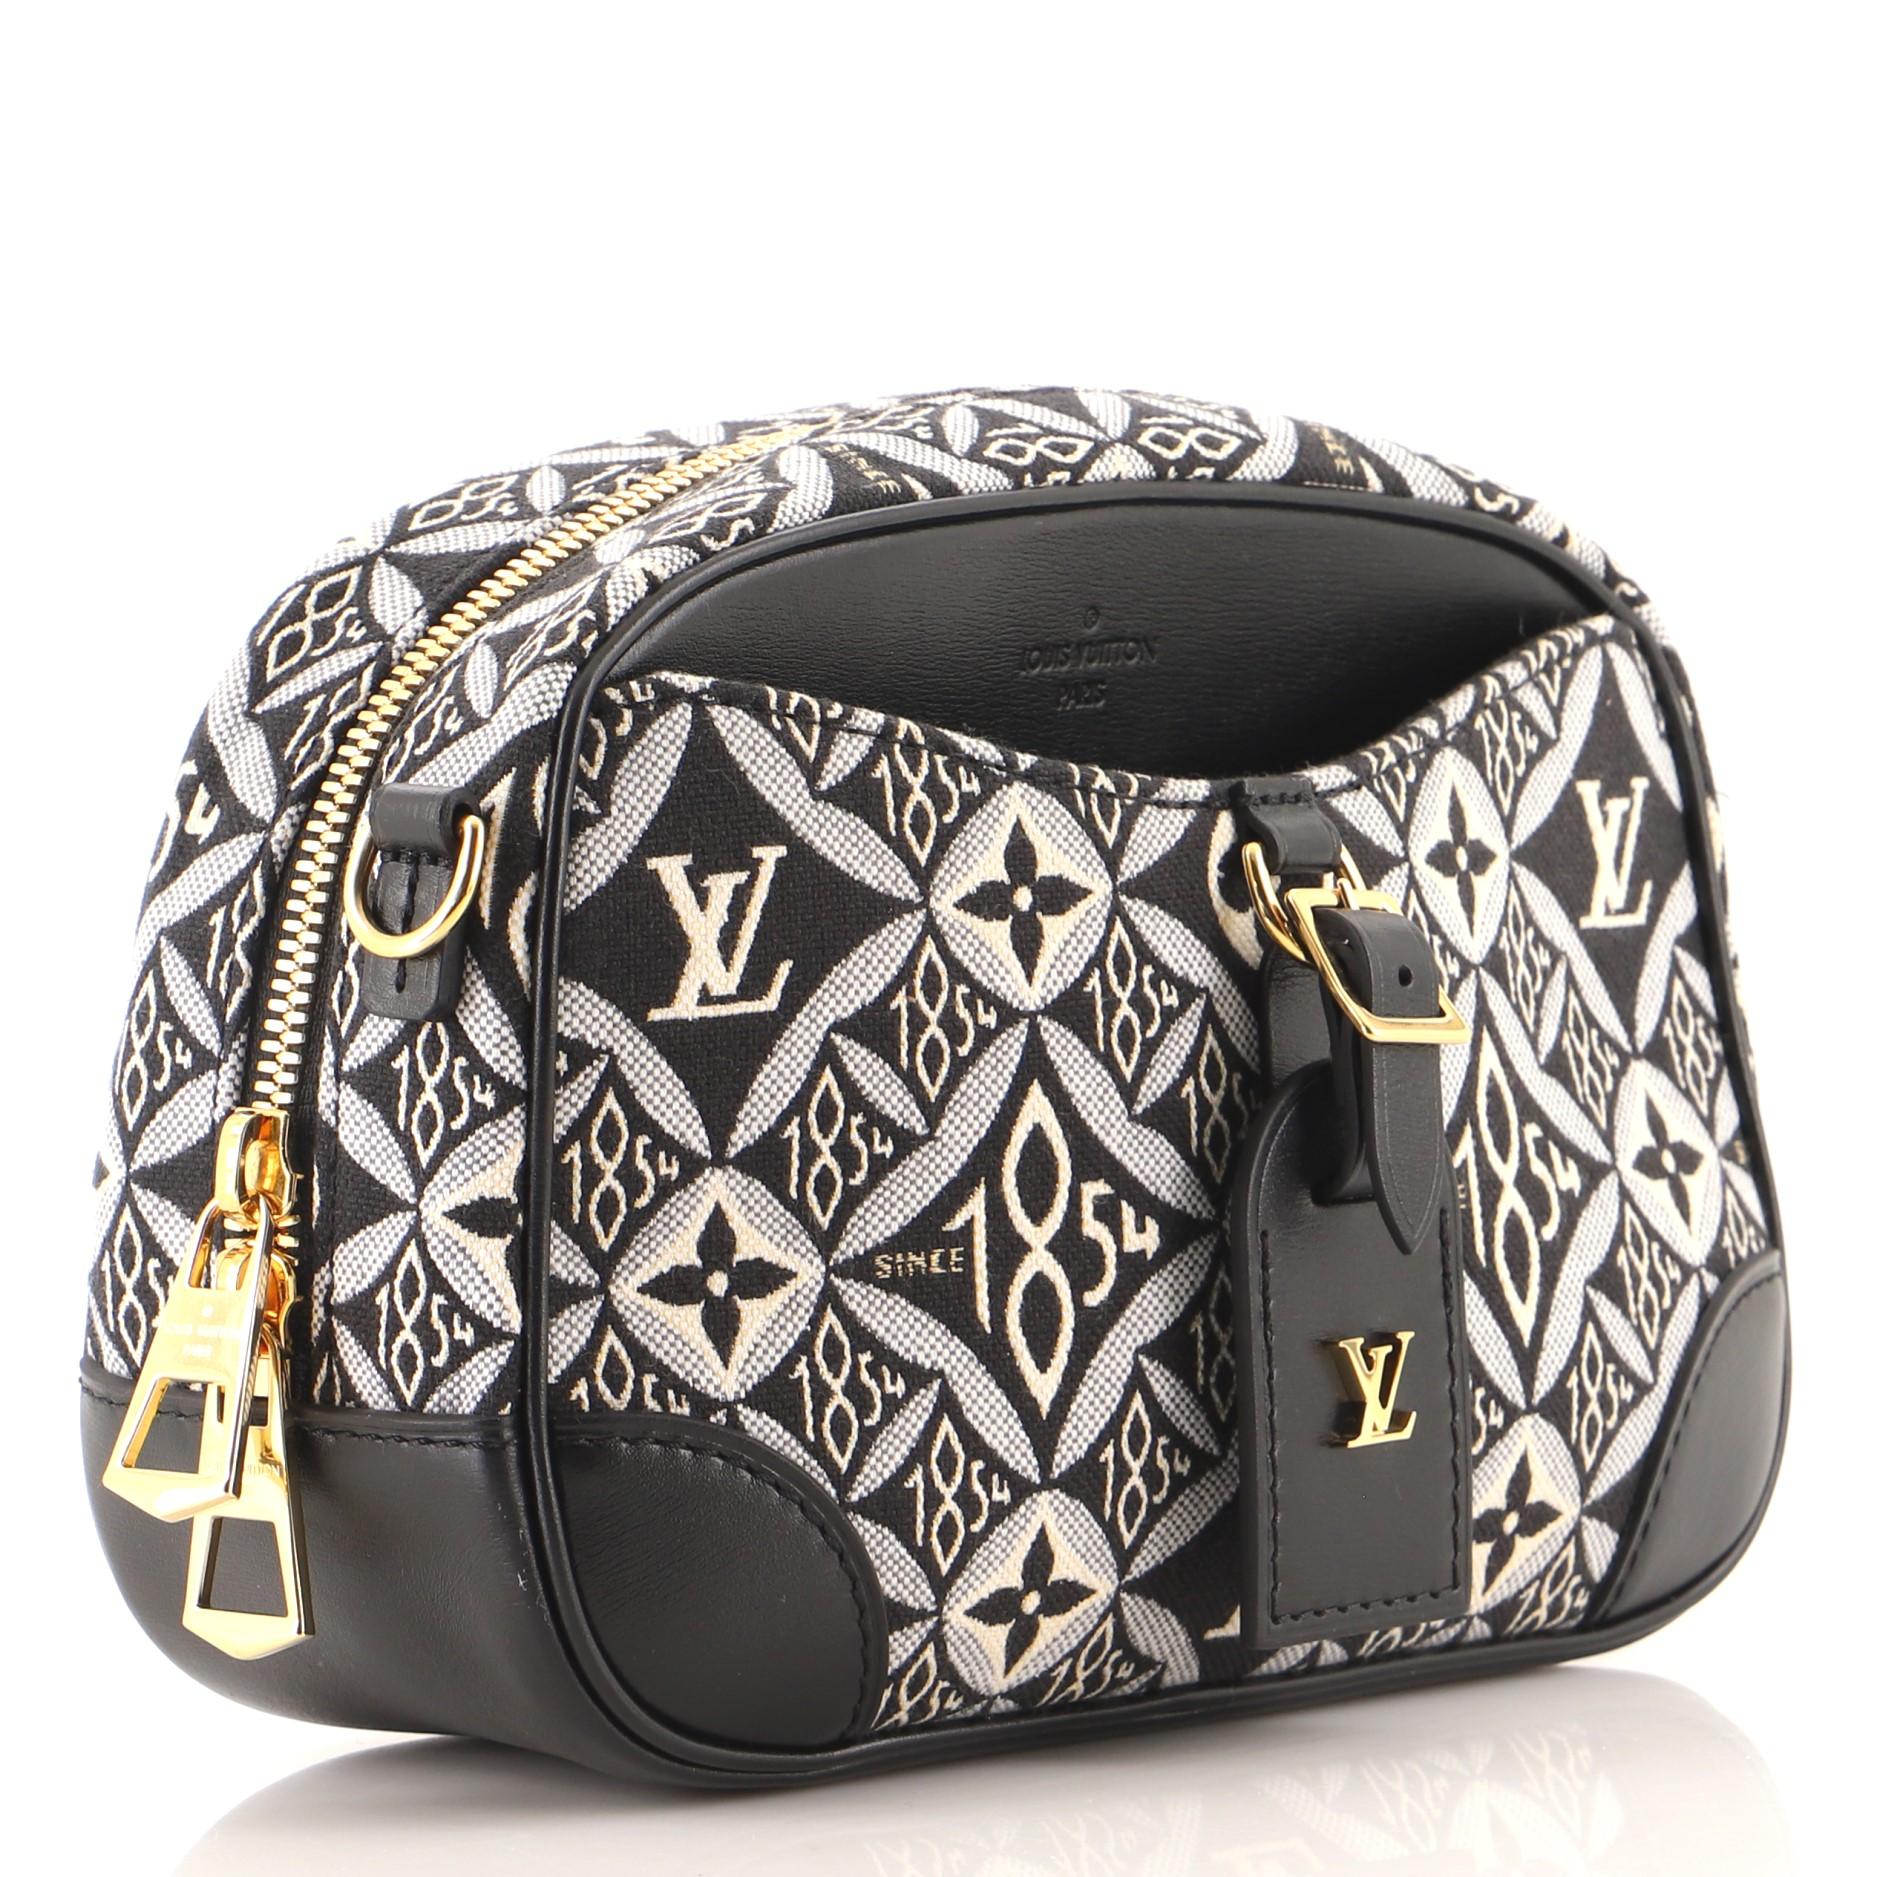 Black Louis Vuitton Deauville Handbag Limited Edition Since 1854 Monogram Jacquard Min